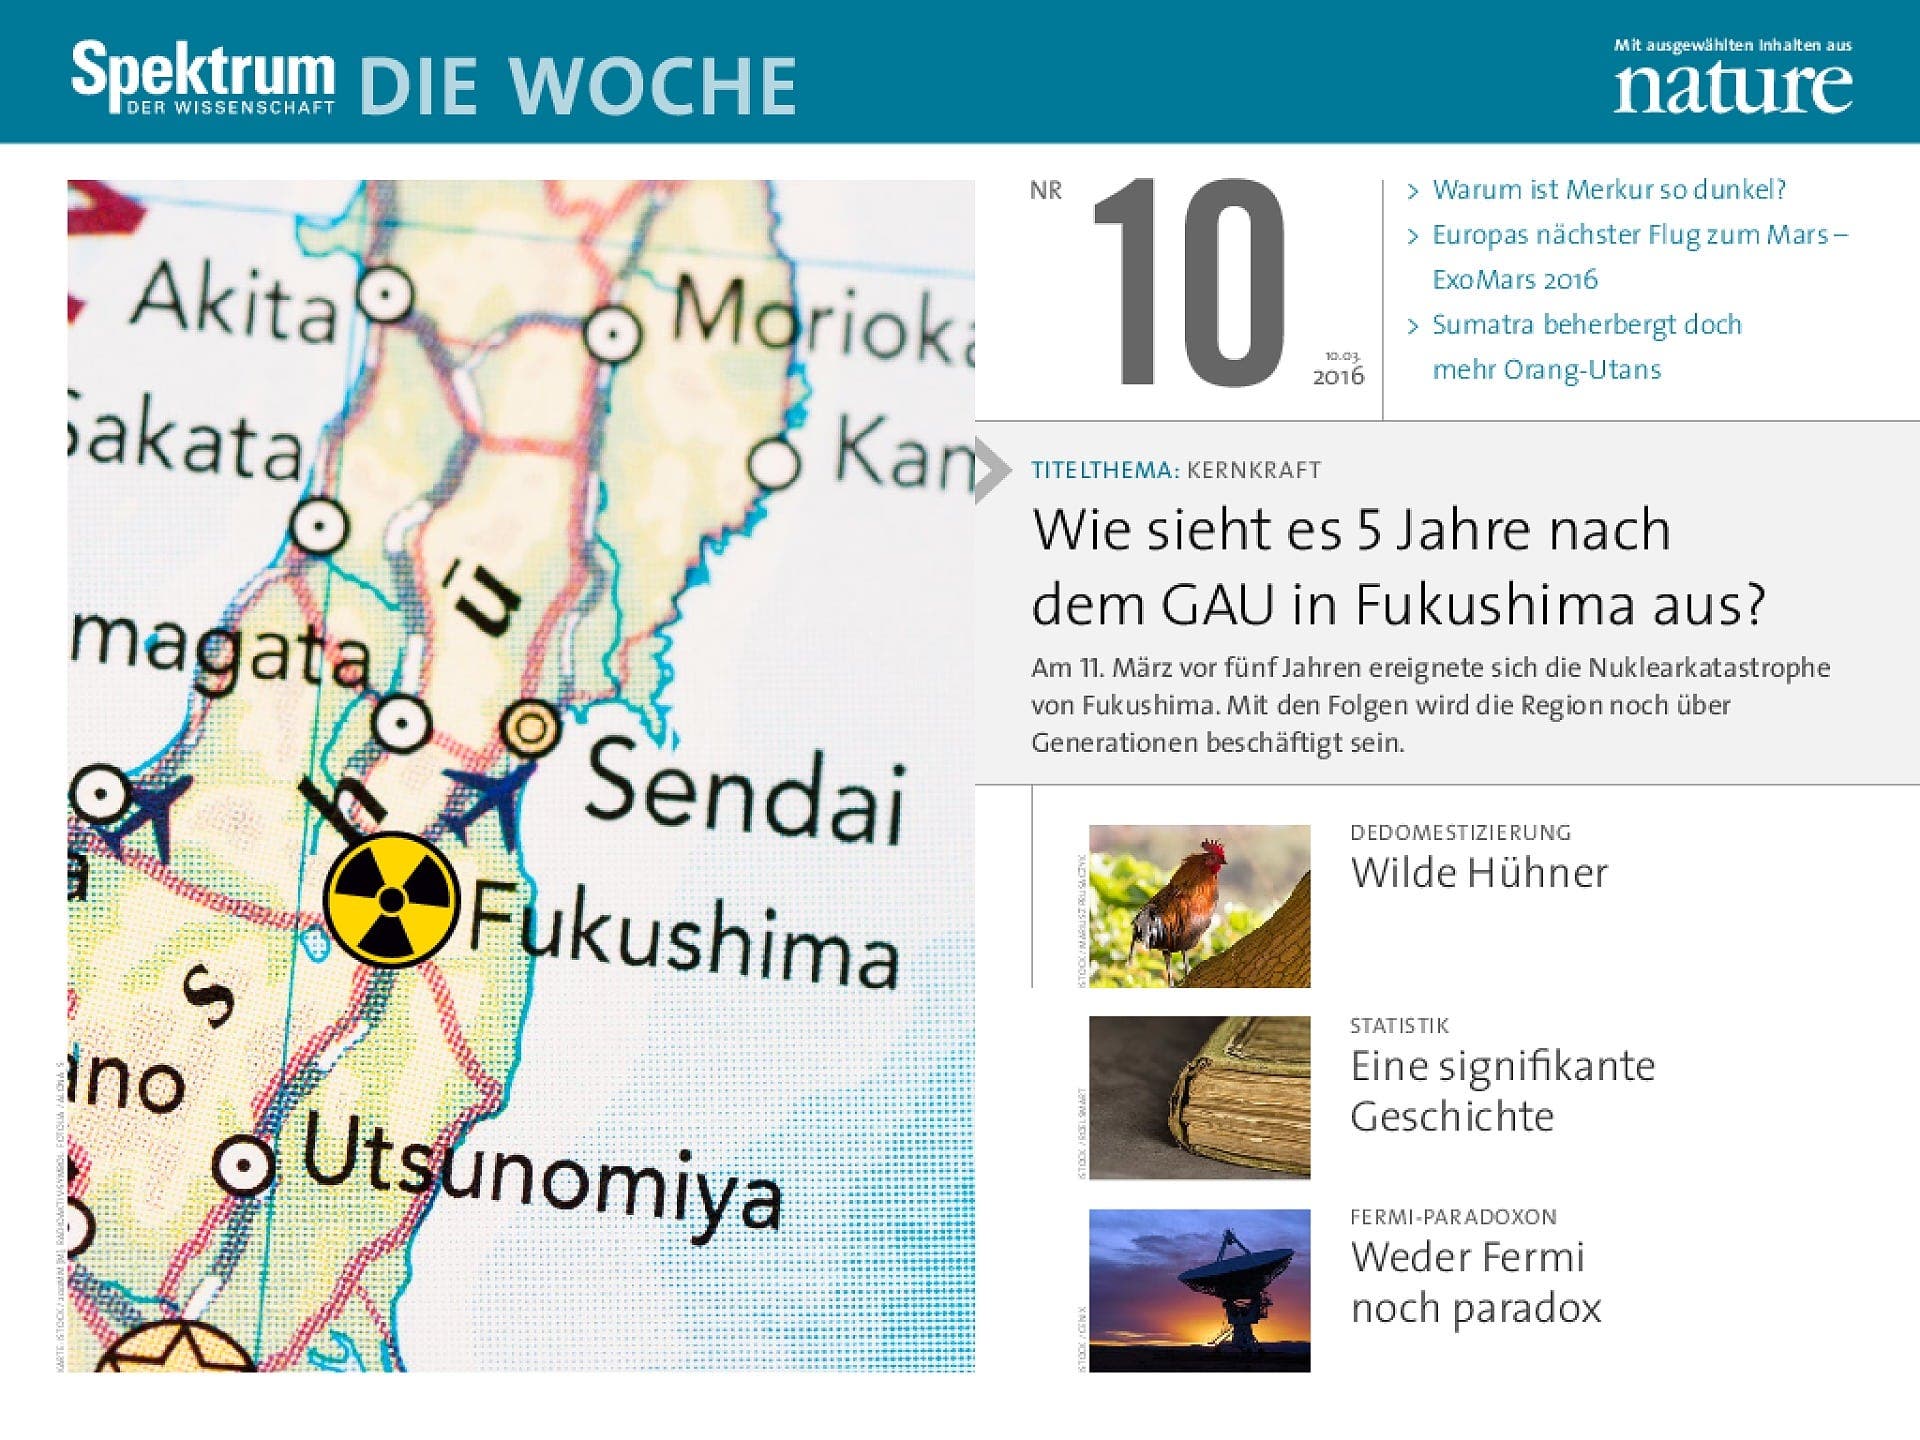 Wie sieht es 5 Jahre nach dem GAU in Fukushima aus?